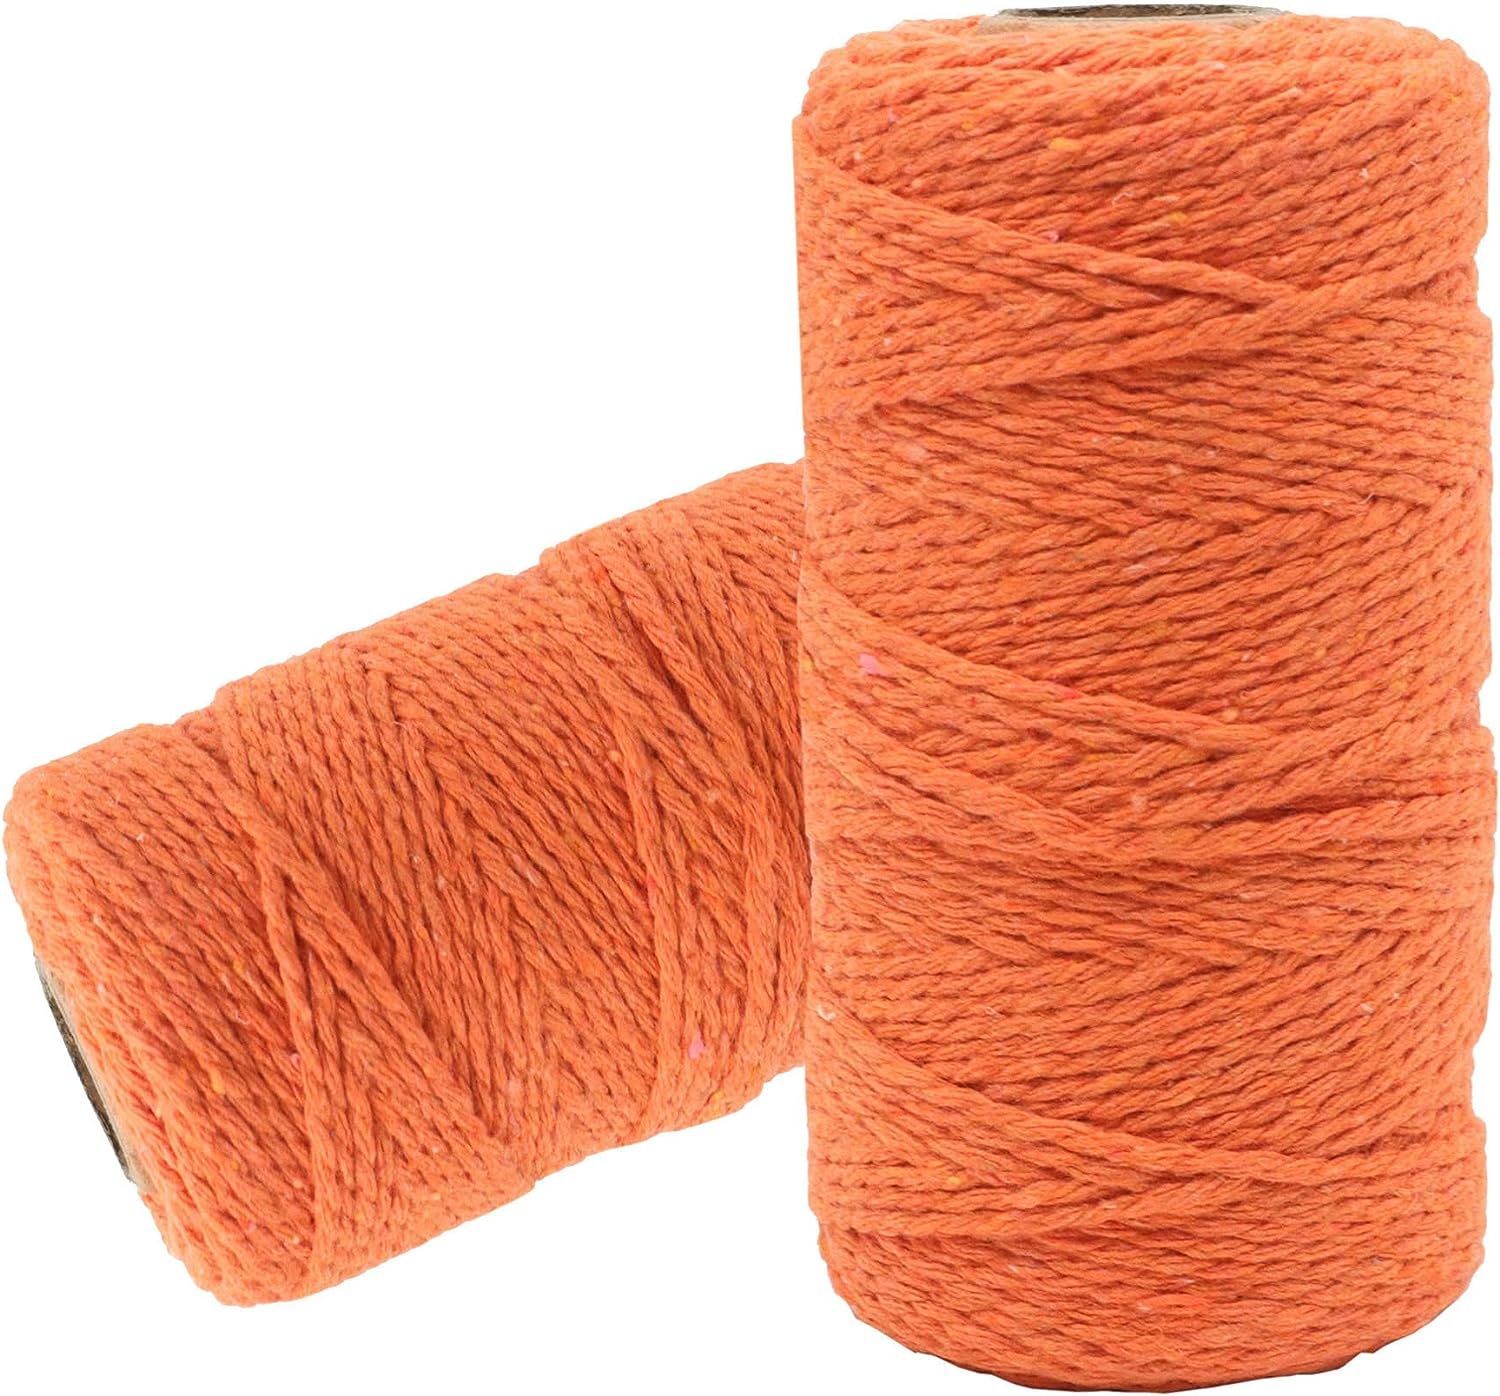 Шпагат хлопковый Kraftcom, 2мм х 50м (1шт), цвет - оранжевый / шпагат для вязания